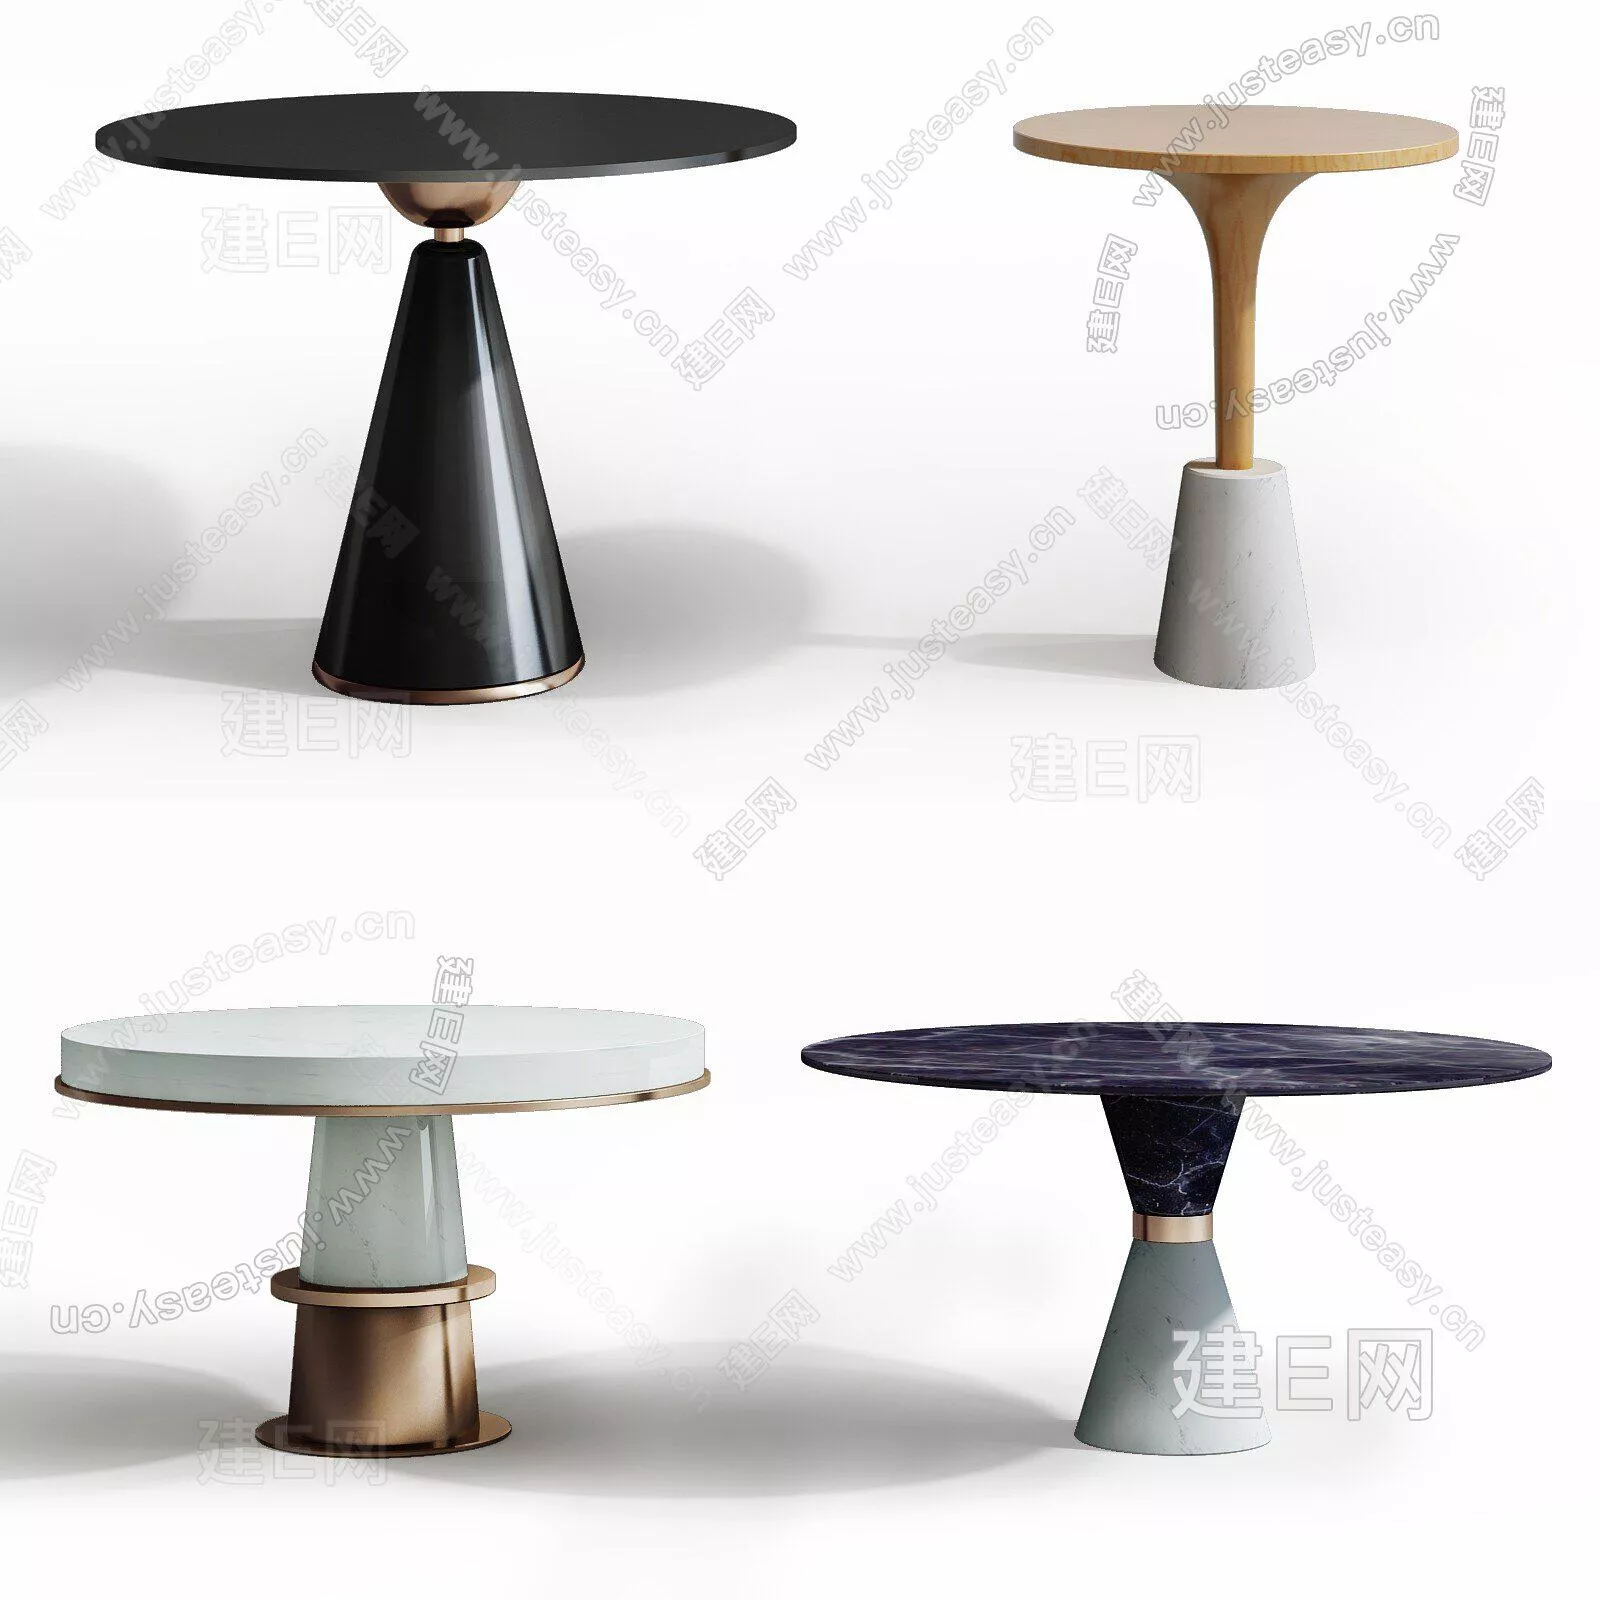 MODERN SIDE TABLE - SKETCHUP 3D MODEL - ENSCAPE - 112217437